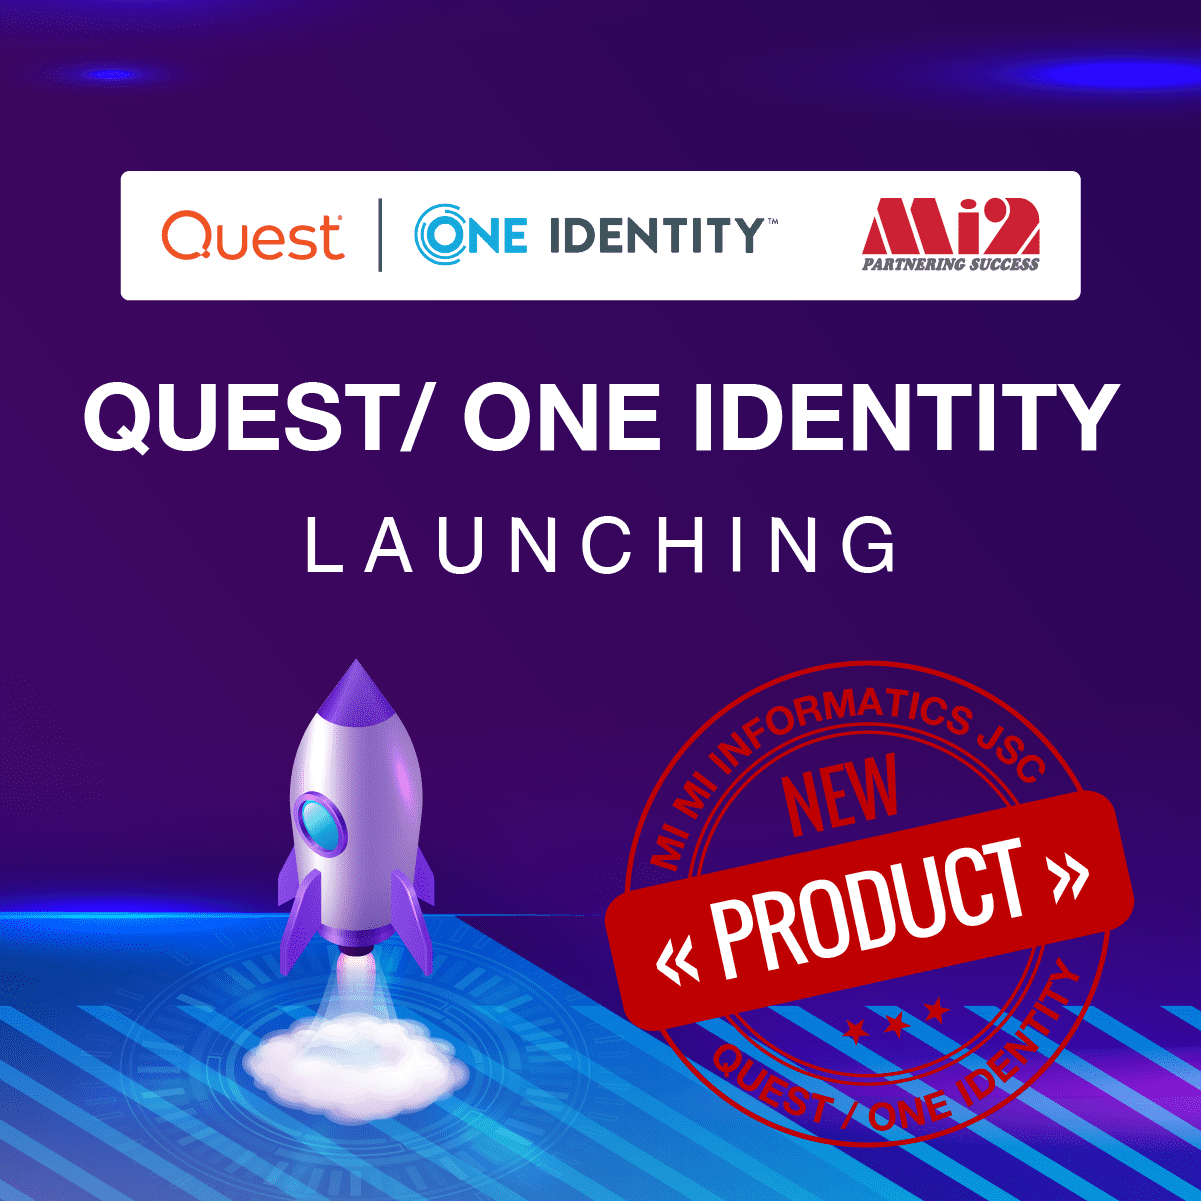 Mi2 chính thức phân phối sản phẩm của Quest/One Identity